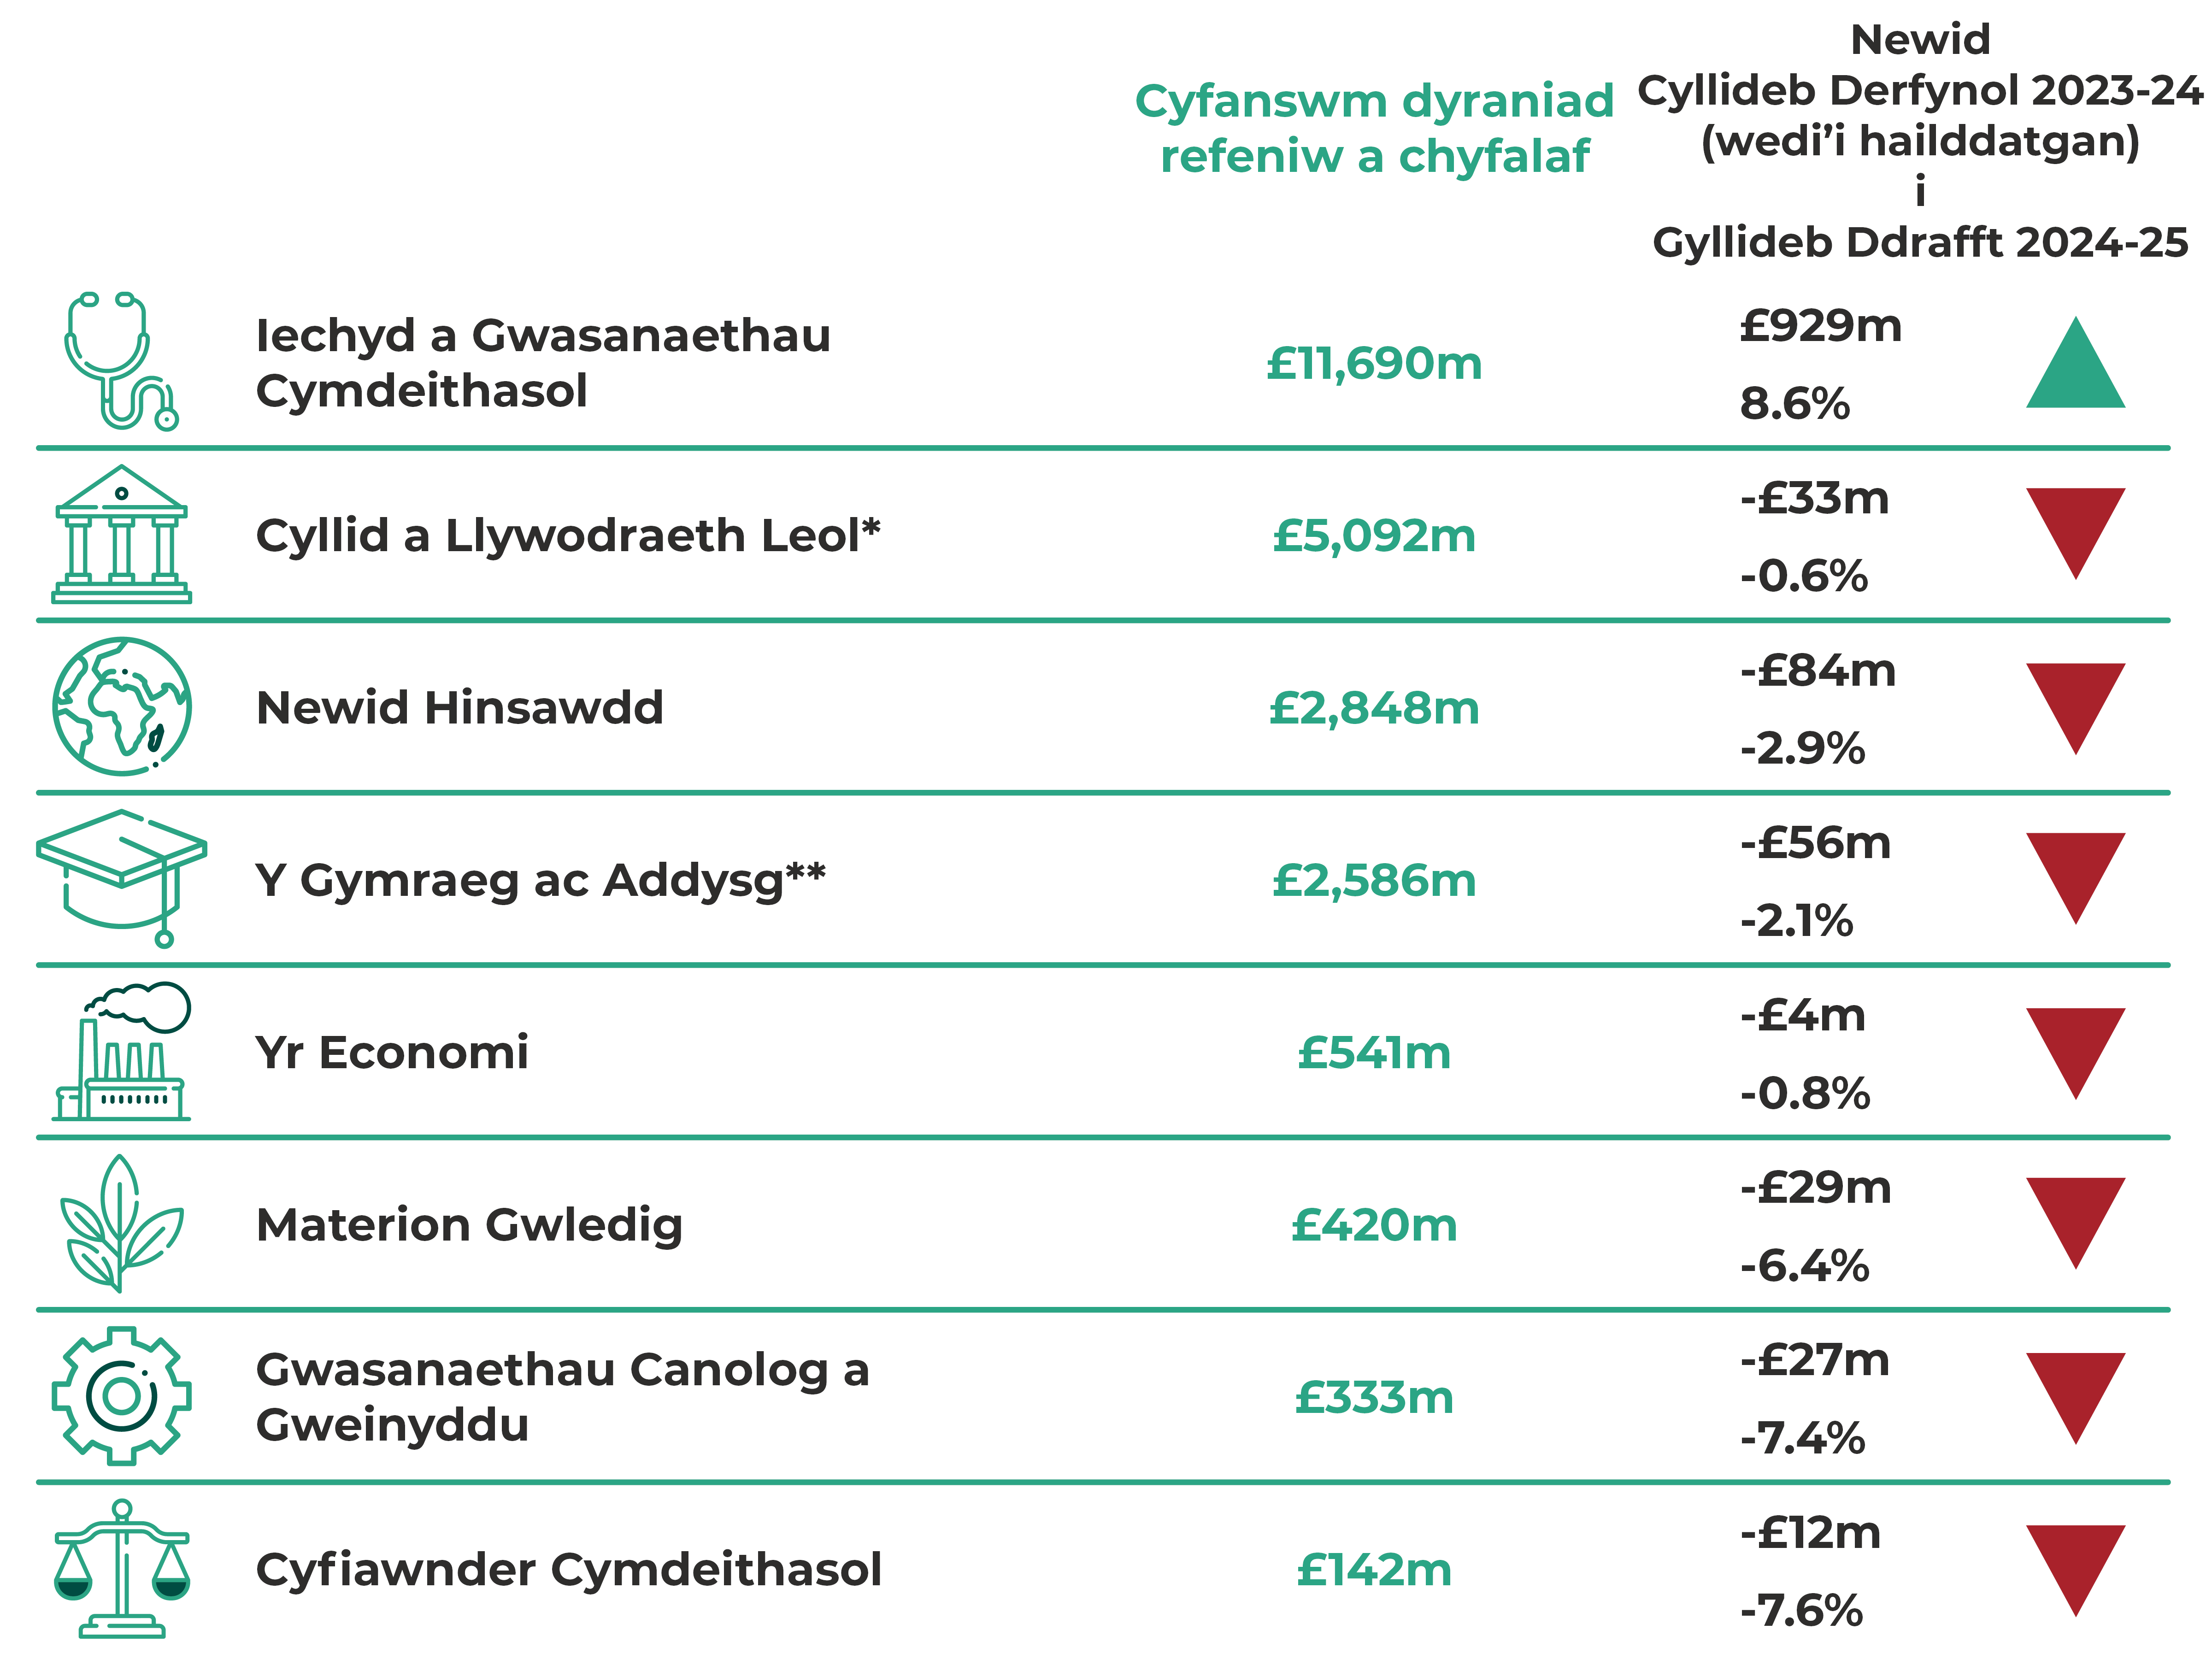 Iechyd a Gwasanaethau Cymdeithasol £11,690m, cynnydd o £929m (8.6%). Cyllid a Llywodraeth Leol £5,092m, gostyngiad o £33m (-0.6%). Newid Hinsawdd £2,848m, gostyngiad o £84m (-2.9%). Y Gymraeg ac Addysg £2,586m, gostyngiad o £56m (-2.1%). Yr Economi £541m, gostyngiad o £4m (-0.8%). Materion Gwledig £420m, gostyngiad o £29m (-6.4%). Gwasanaethau Canolog a Gweinyddu £333m, gostyngiad o £27m (-7.4%). Cyfiawnder Cymdeithasol £142m, gostyngiad o £12m (-7.6%).